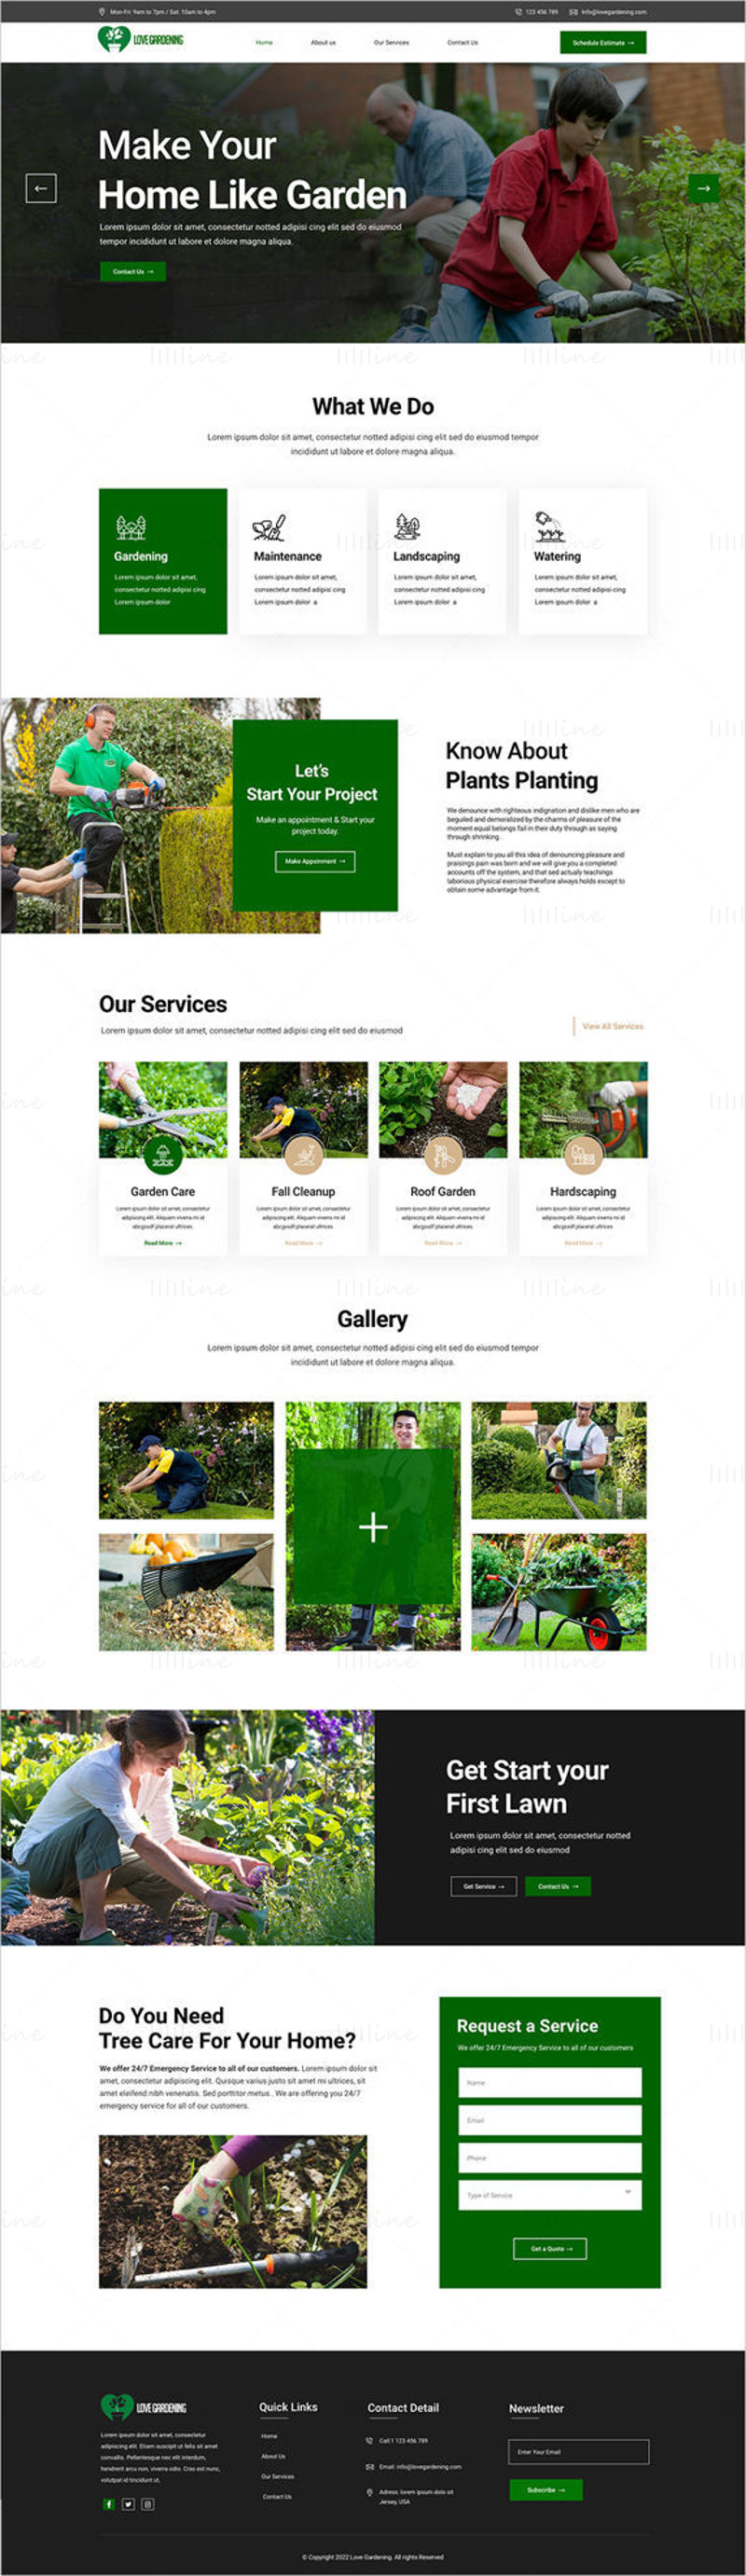 Шаблон целевой страницы сайта Love Gardening Company — пользовательский интерфейс Adobe XD